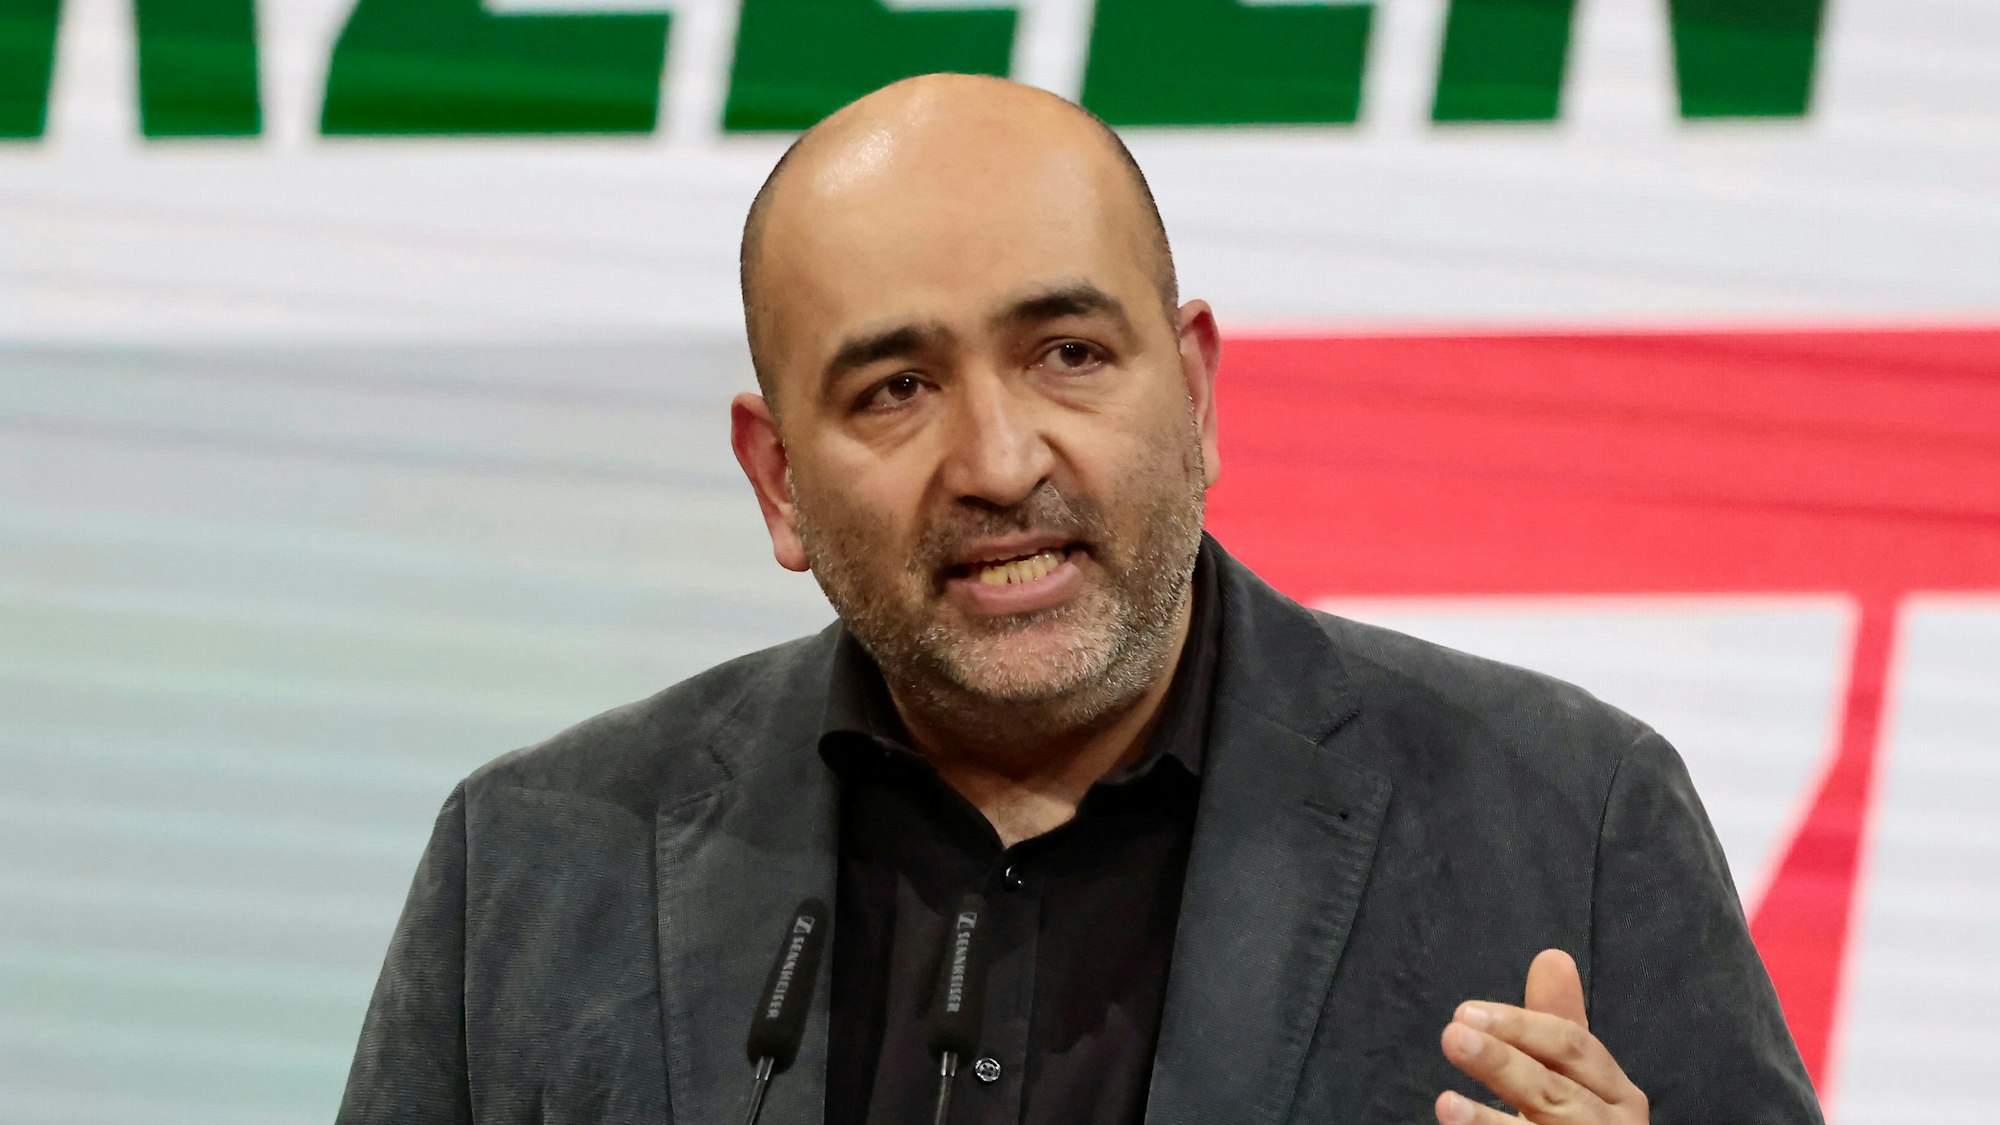 Omid Nouripour am 29. Januar 2022 beim Bundesparteitag von Bündnis 90/Die Grünen in Berlin.